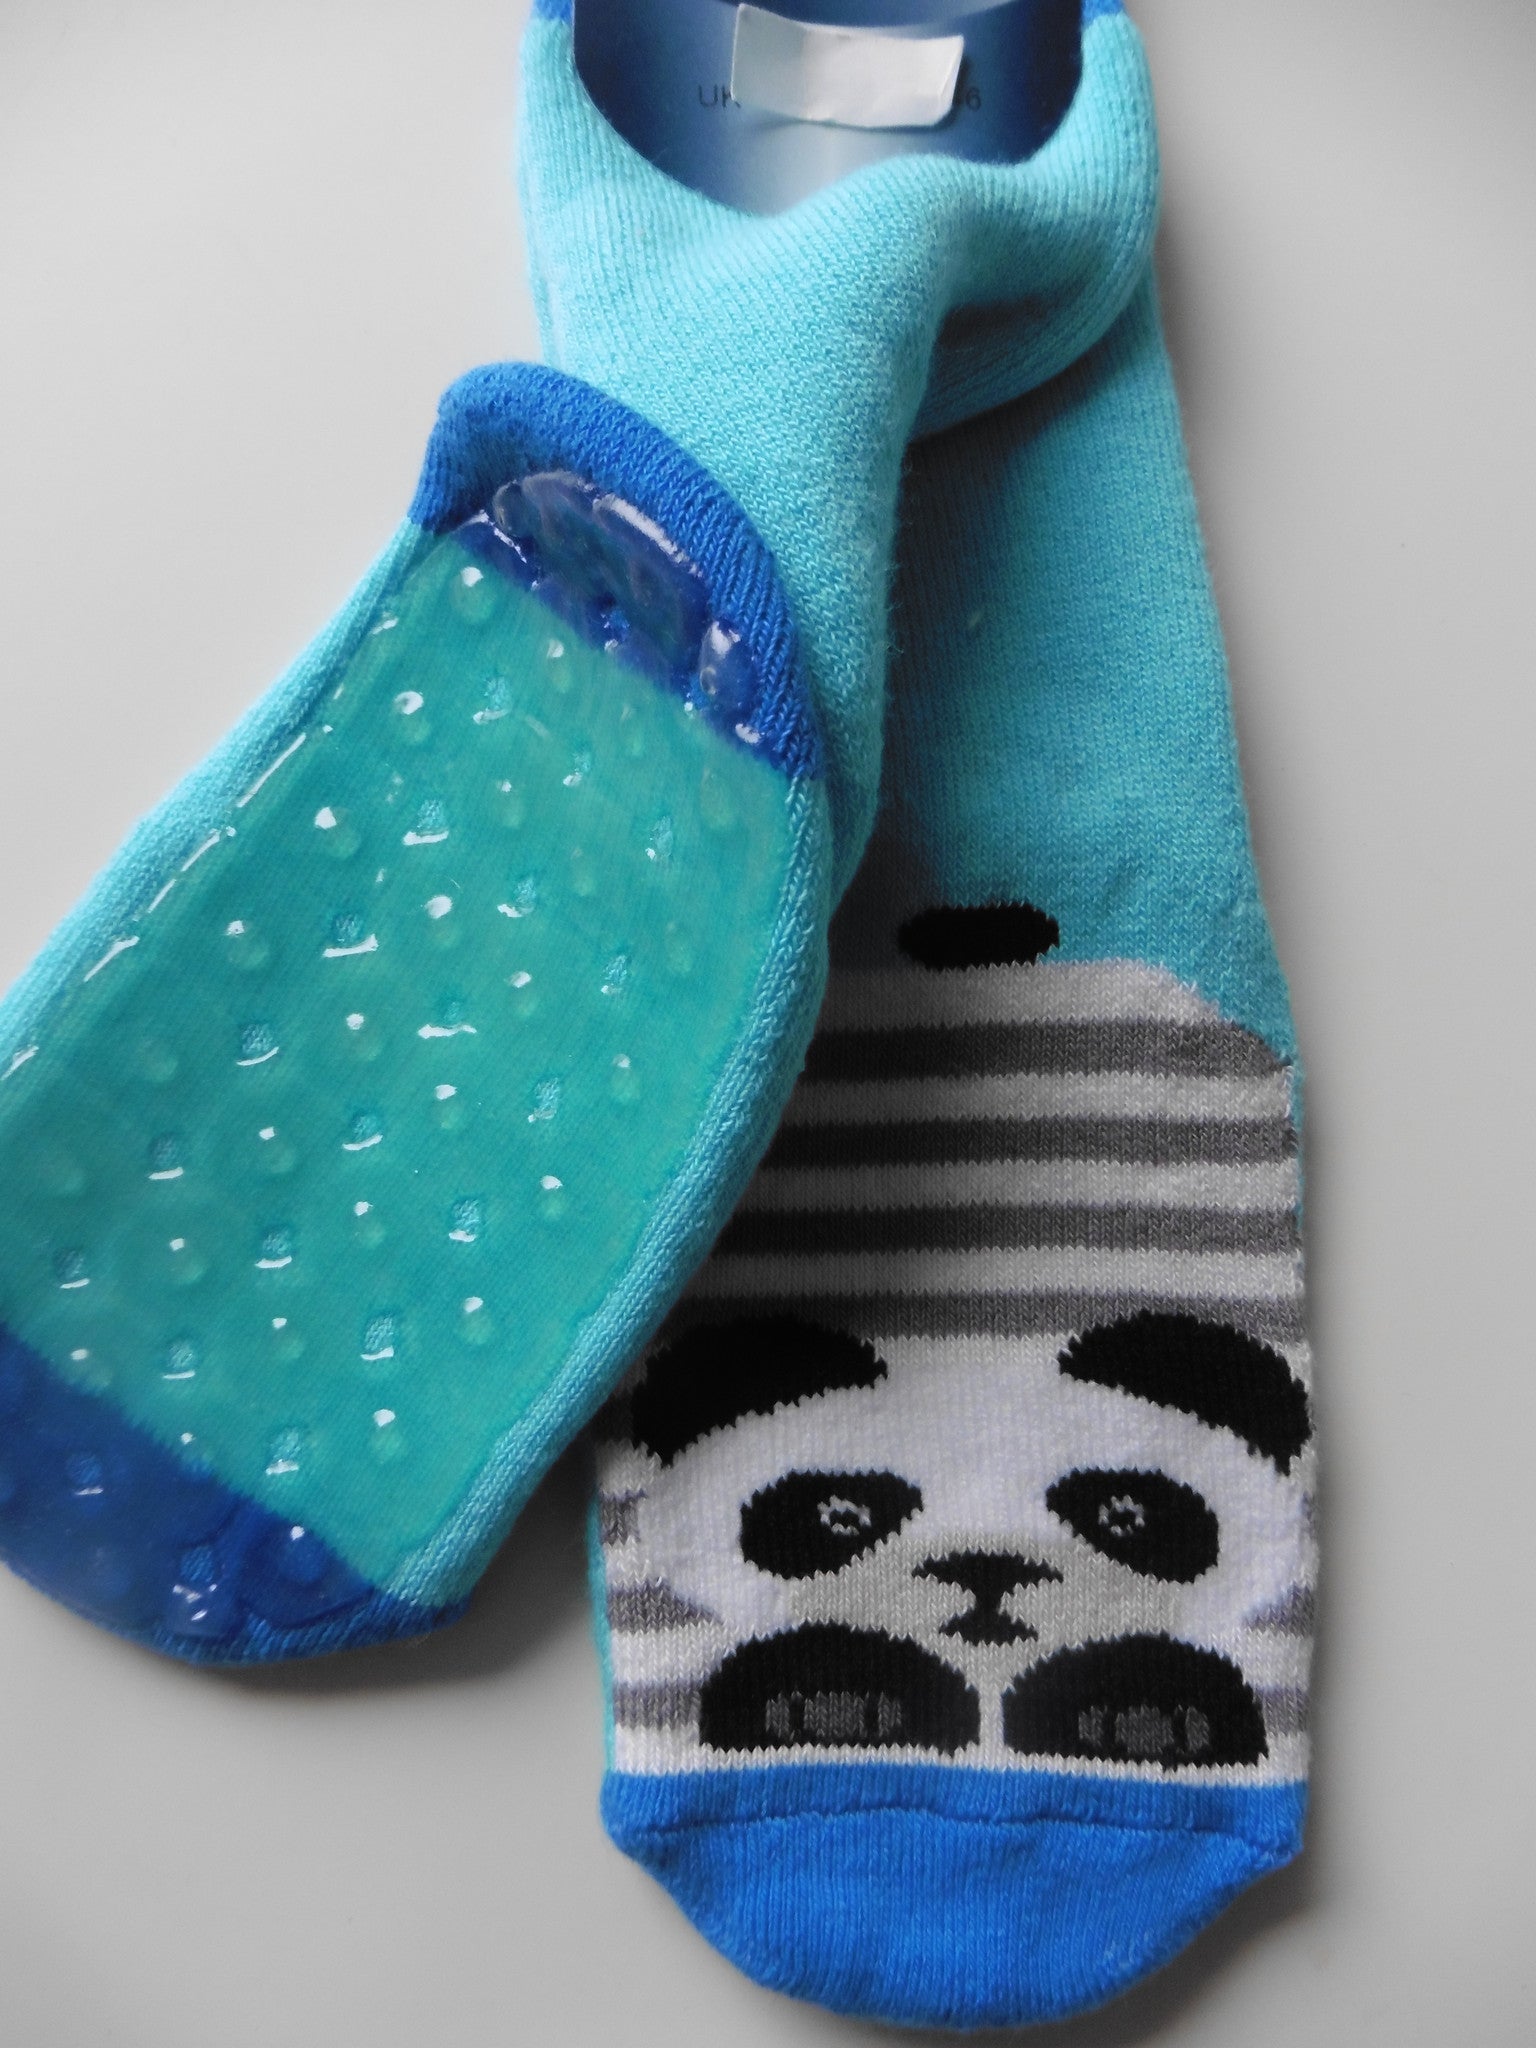 Stoppi Ewers Socken Pandabär